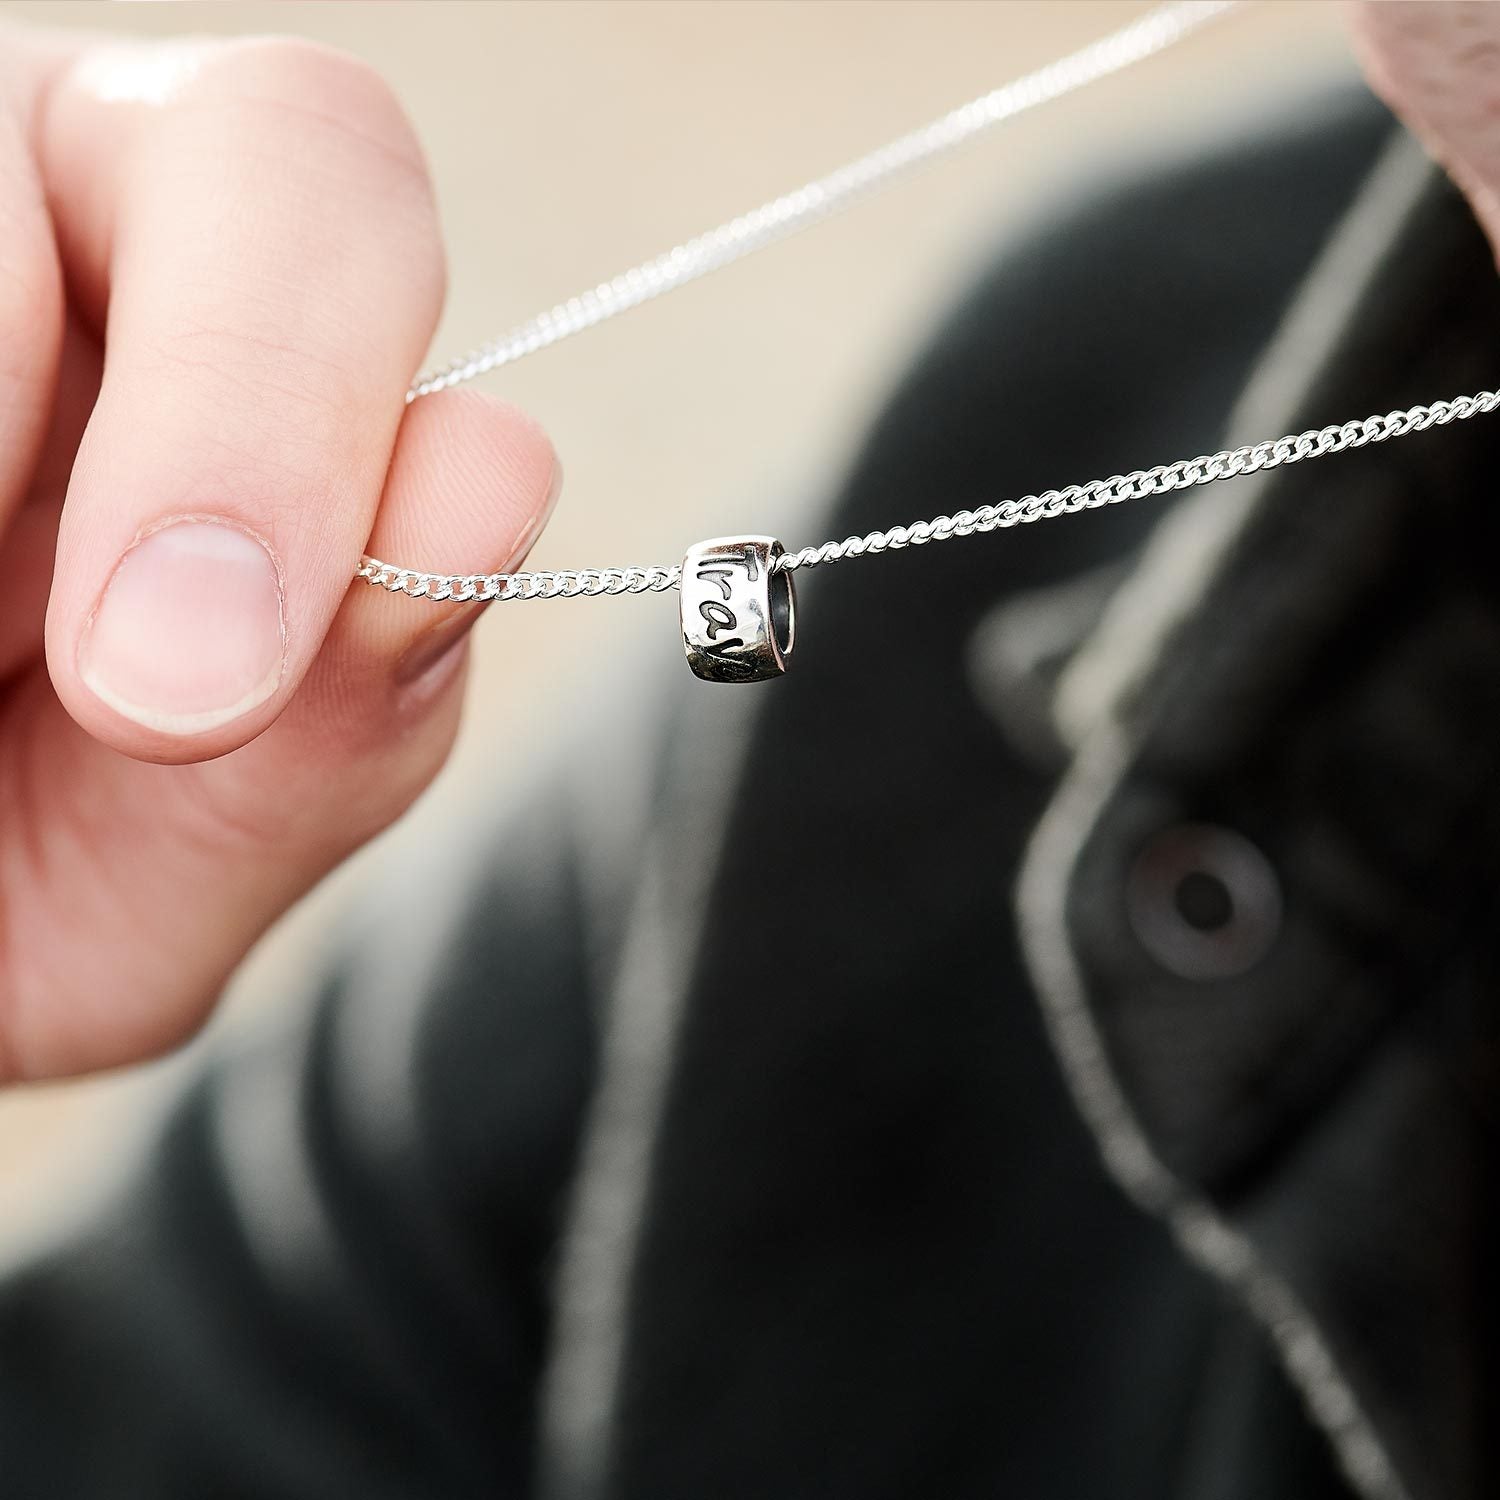 Travel Safe Silver Necklace - alternative St Christopher Pendant for men & women handmade in the UK